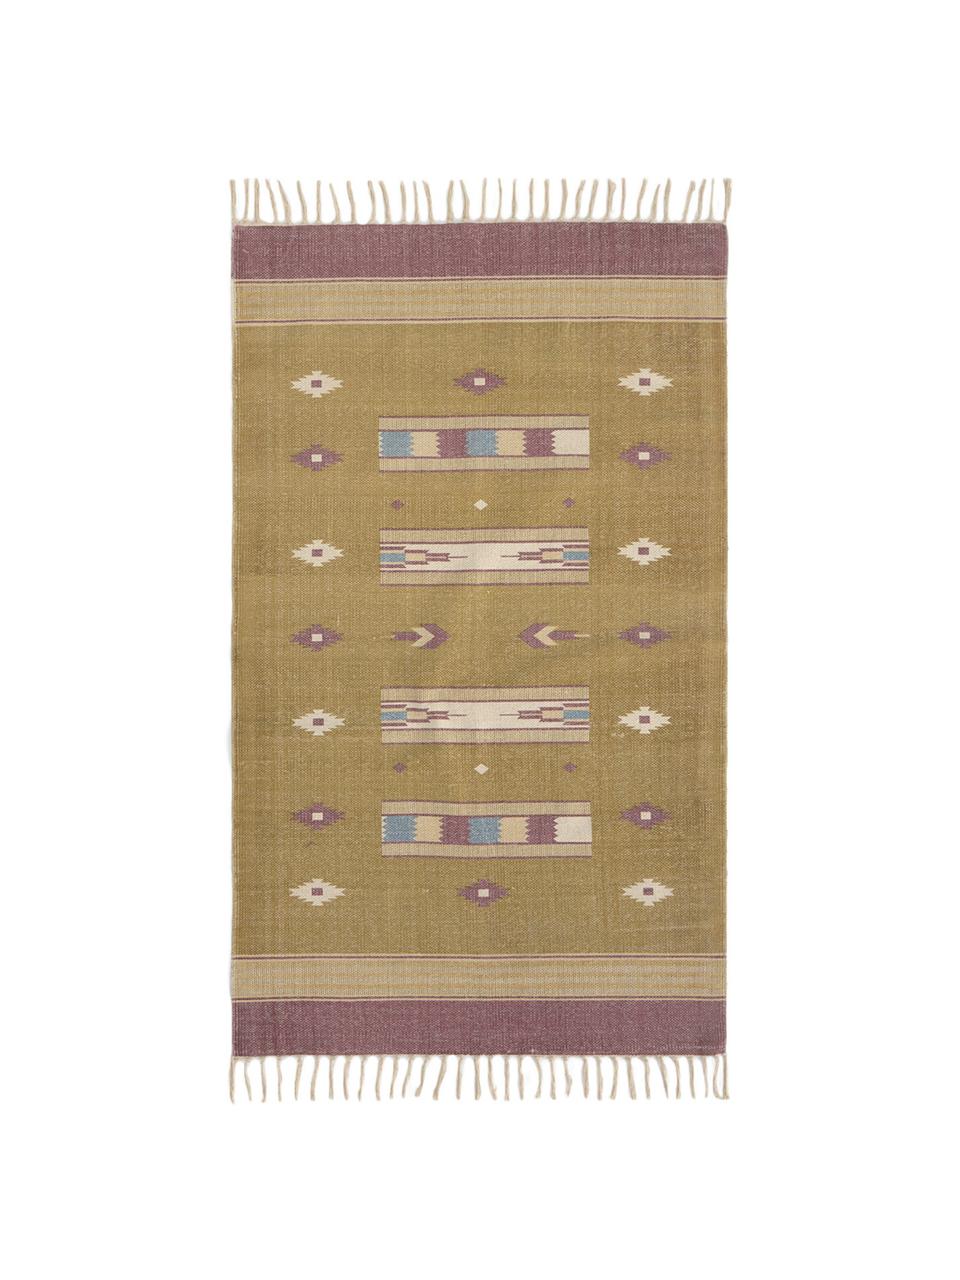 Teppich Kamel im Ethno Style, 100% Baumwolle, Senfgelb, Beige, Lila, Blau, B 150 x L 200 cm (Grösse S)